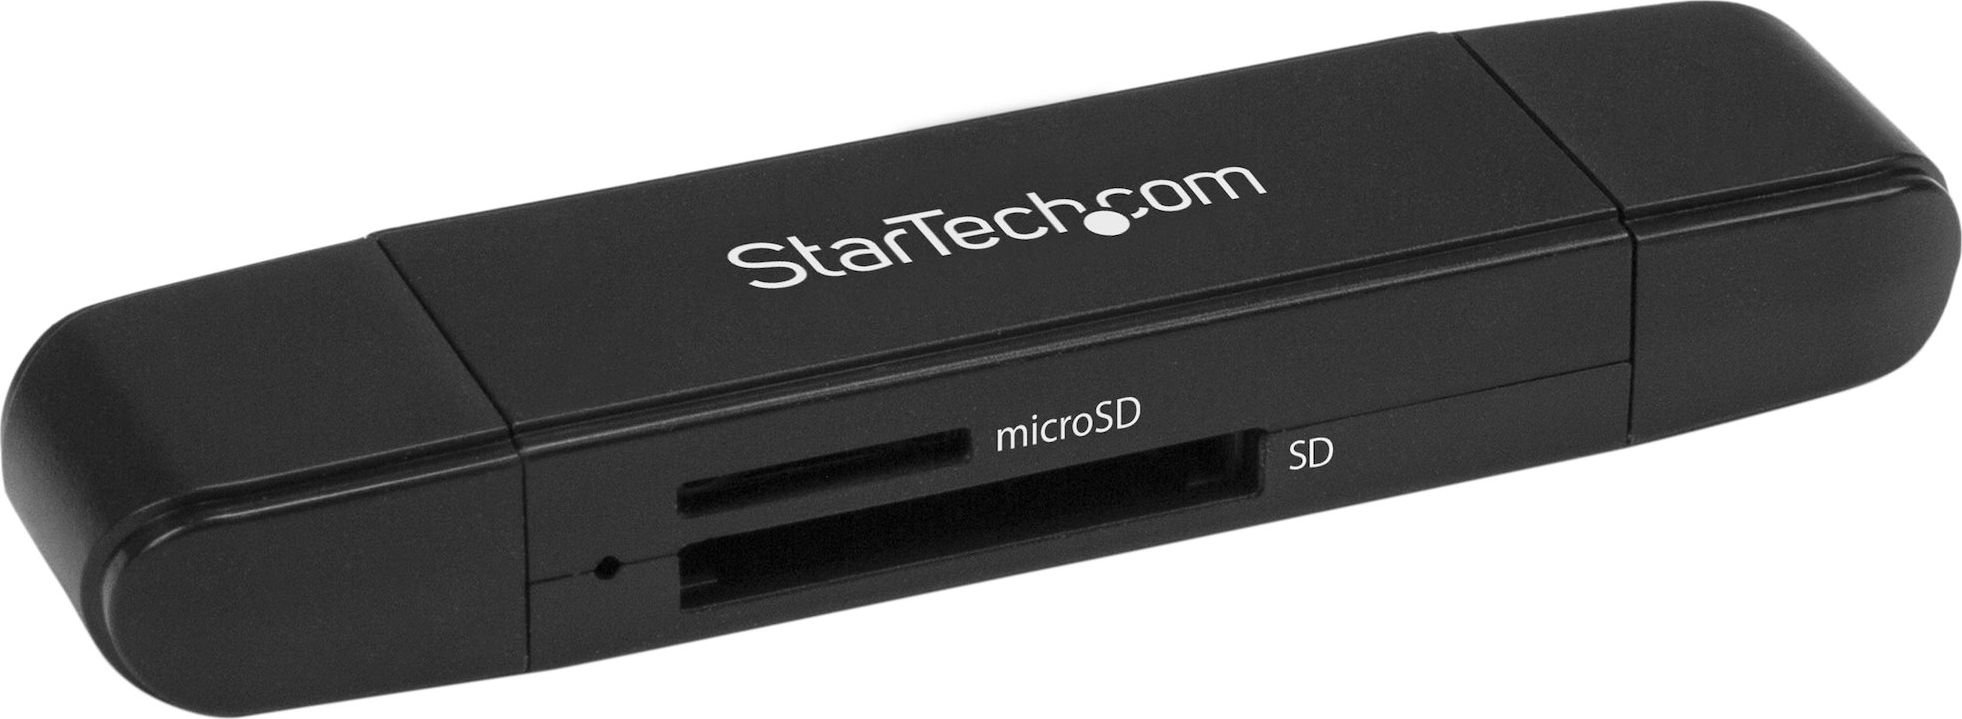 Card reader - Startech USB 3.0 CITITOR CARD SD / microSD / SD / MMC / SDHC / SDXC / microSD / SDHC IN